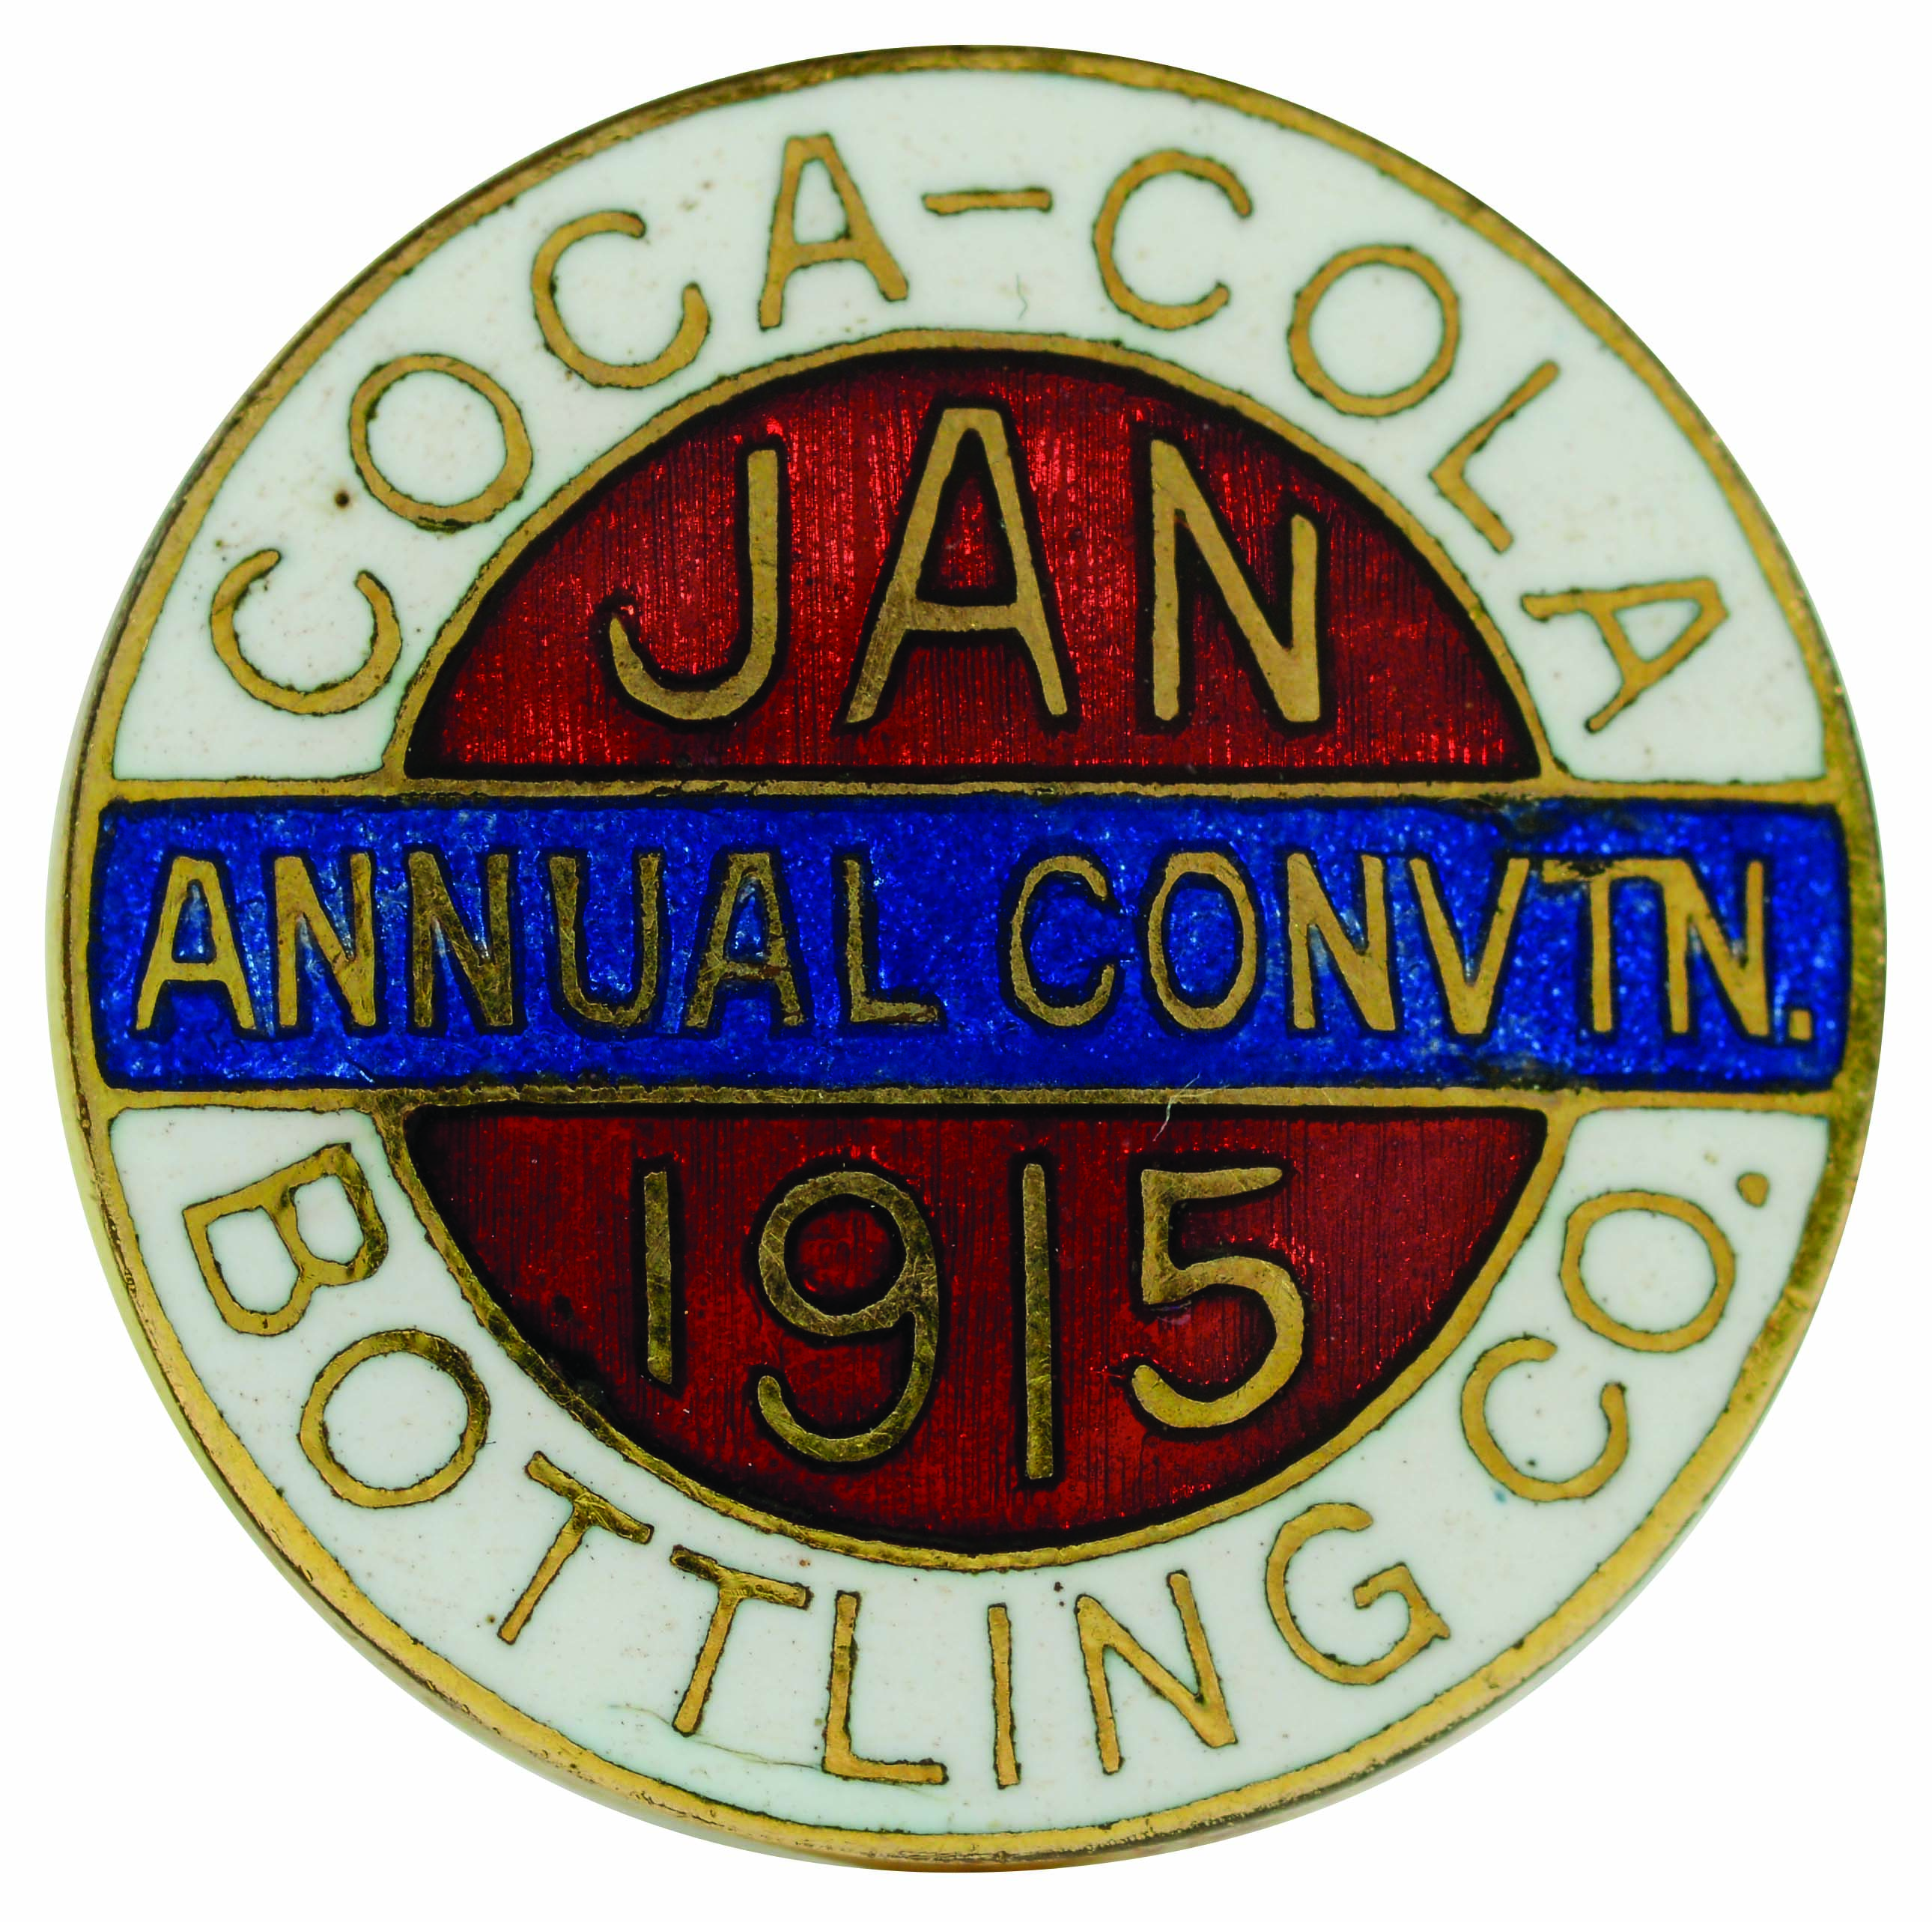 1915 Coca-Cola Convention Medal.